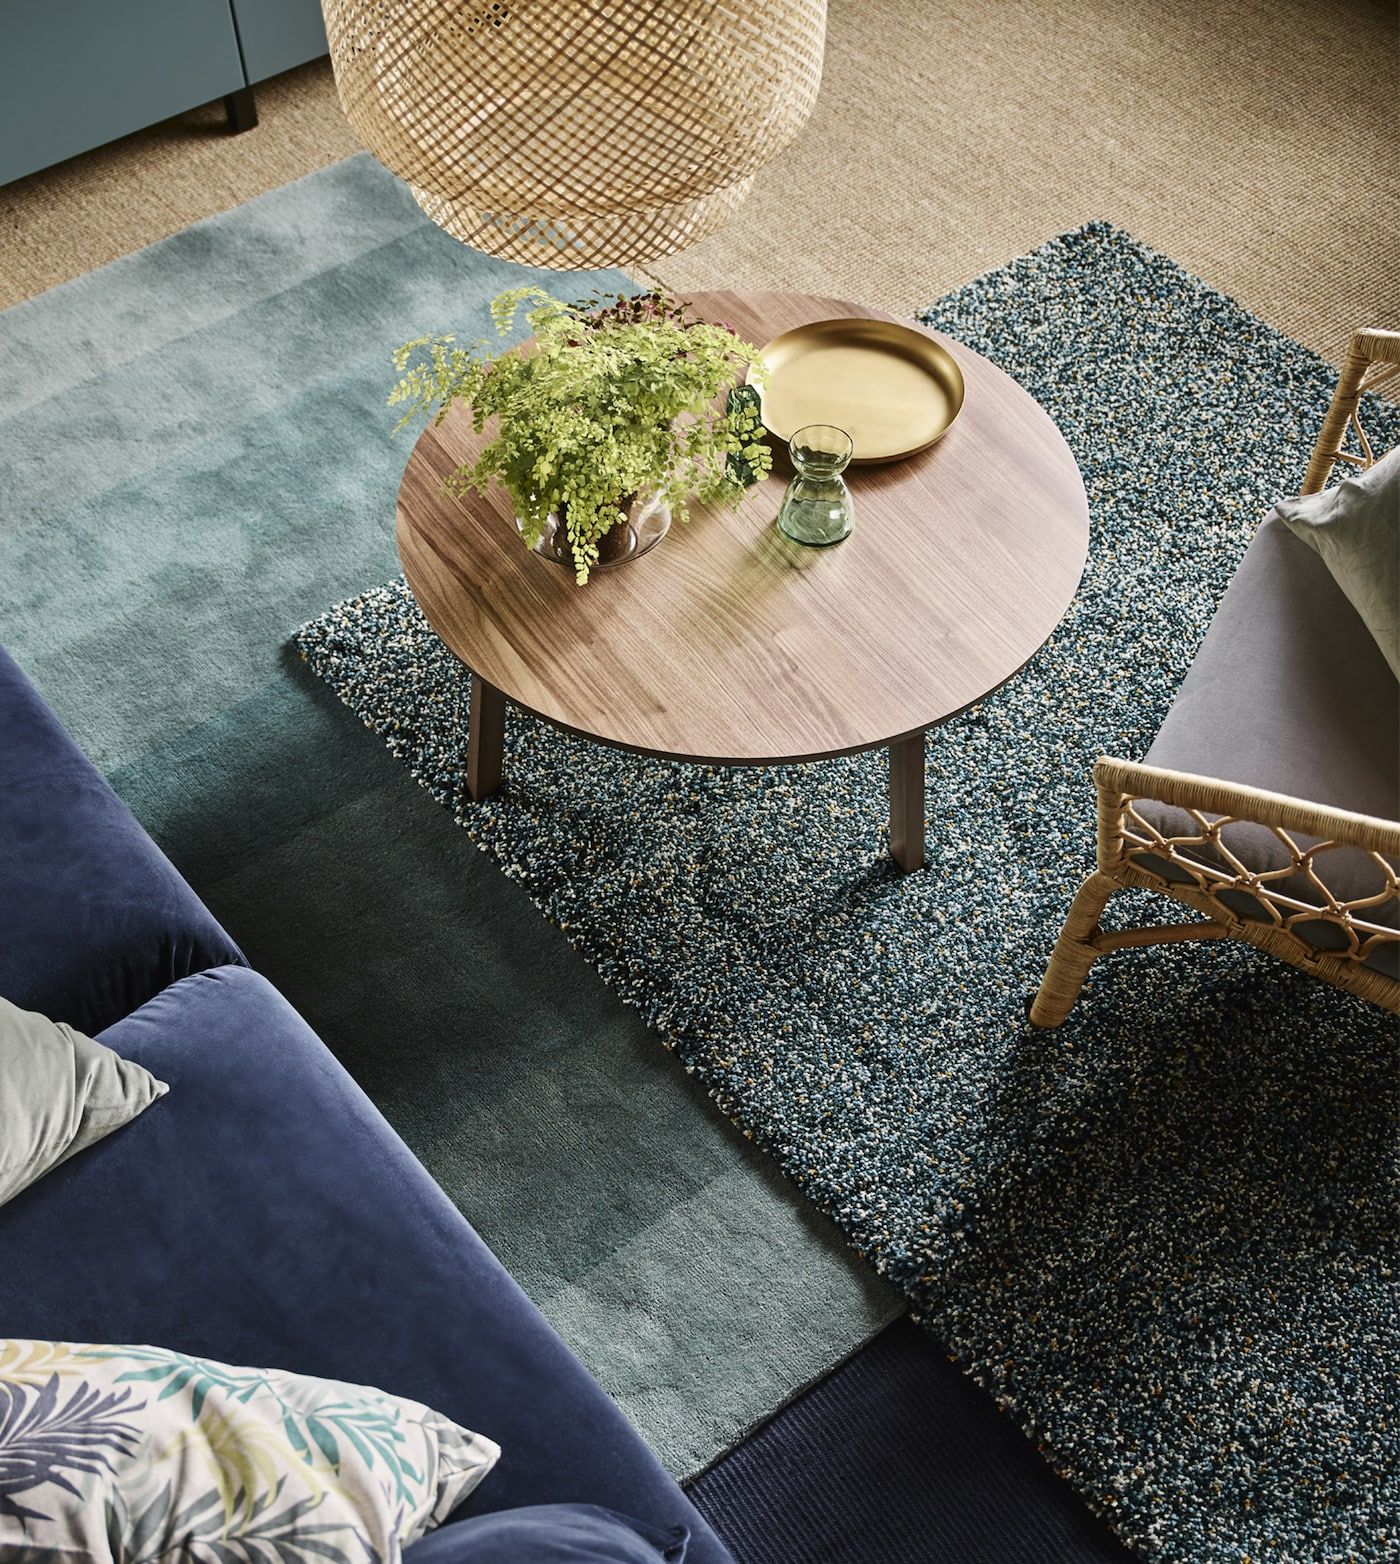 Hai tấm thảm trải sàn đều có hình chữ nhật, đều cùng gam màu xanh nhưng sắc thái và chi tiết khác nhau vẫn tạo nên một vẻ đẹp sang trọng, quyến rũ lạ thường trong không gian tiếp khách được chụp từ trên cao.